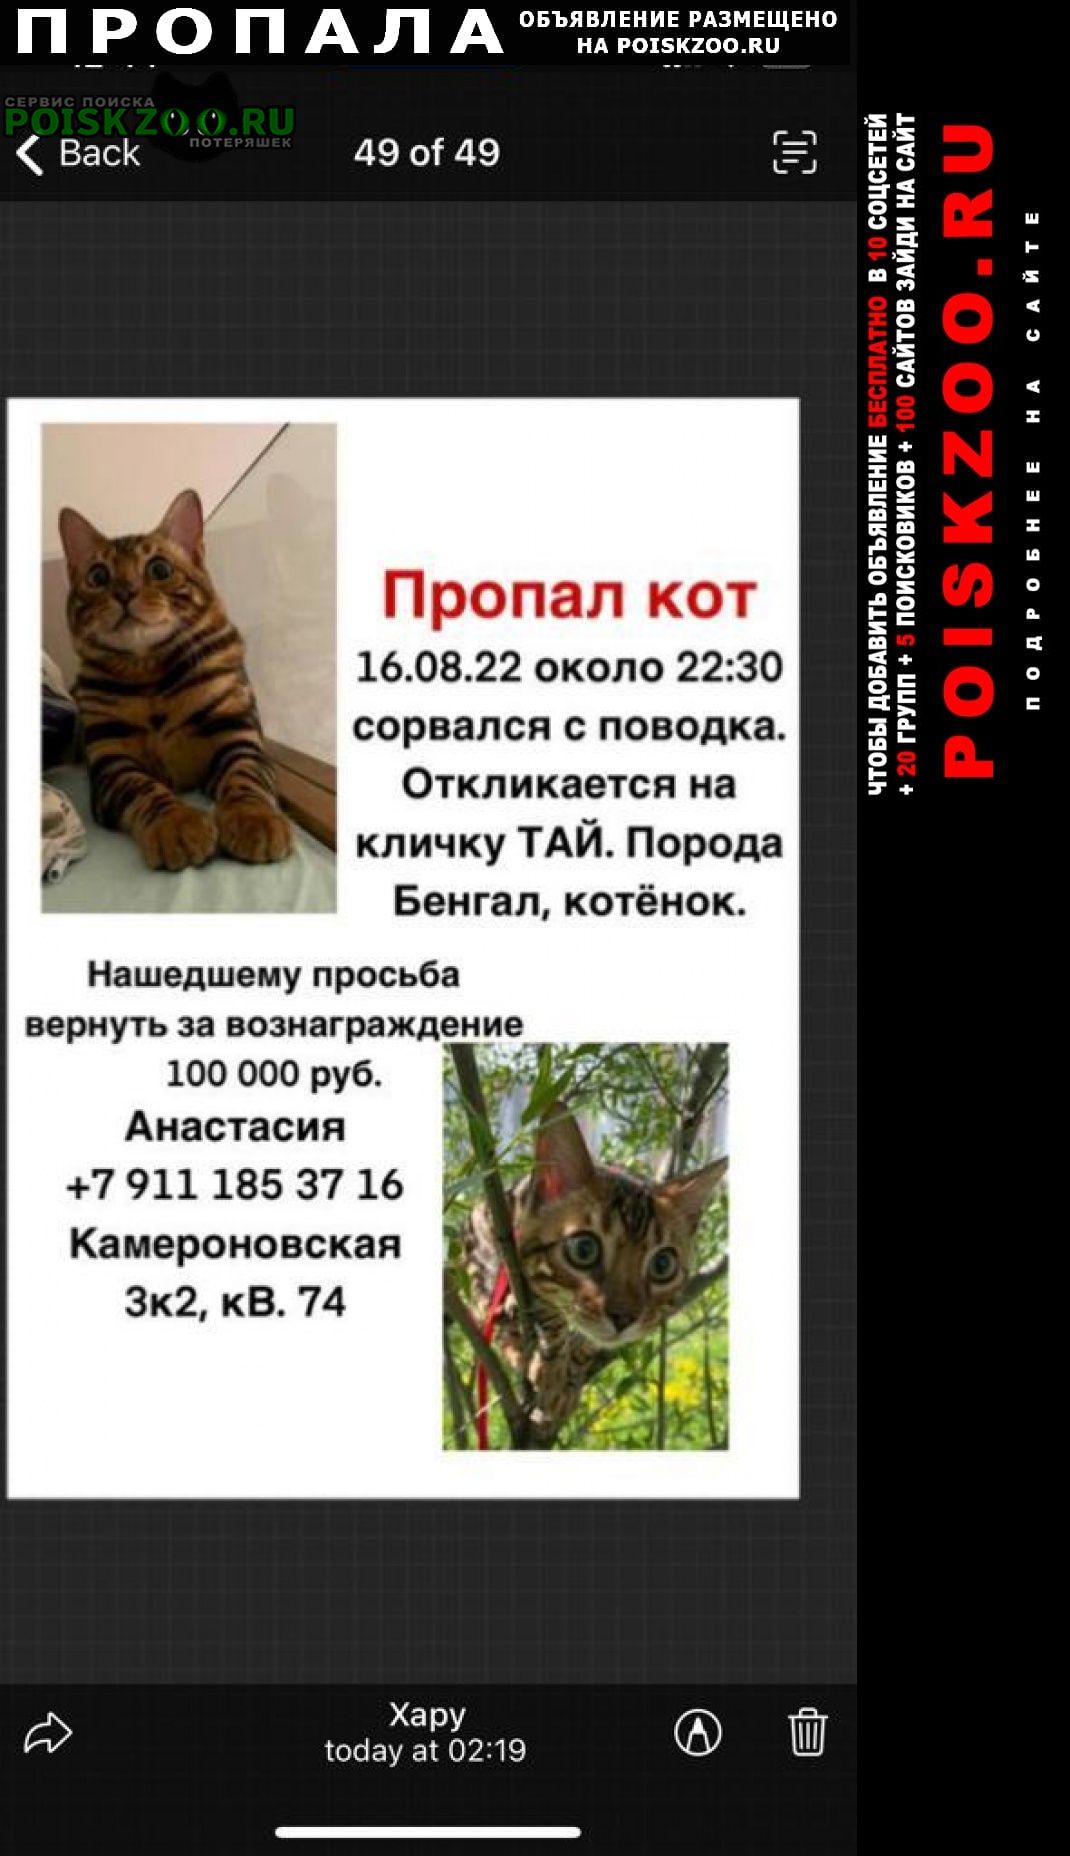 Пушкин Пропал кот бенгал в районе камероновской ул